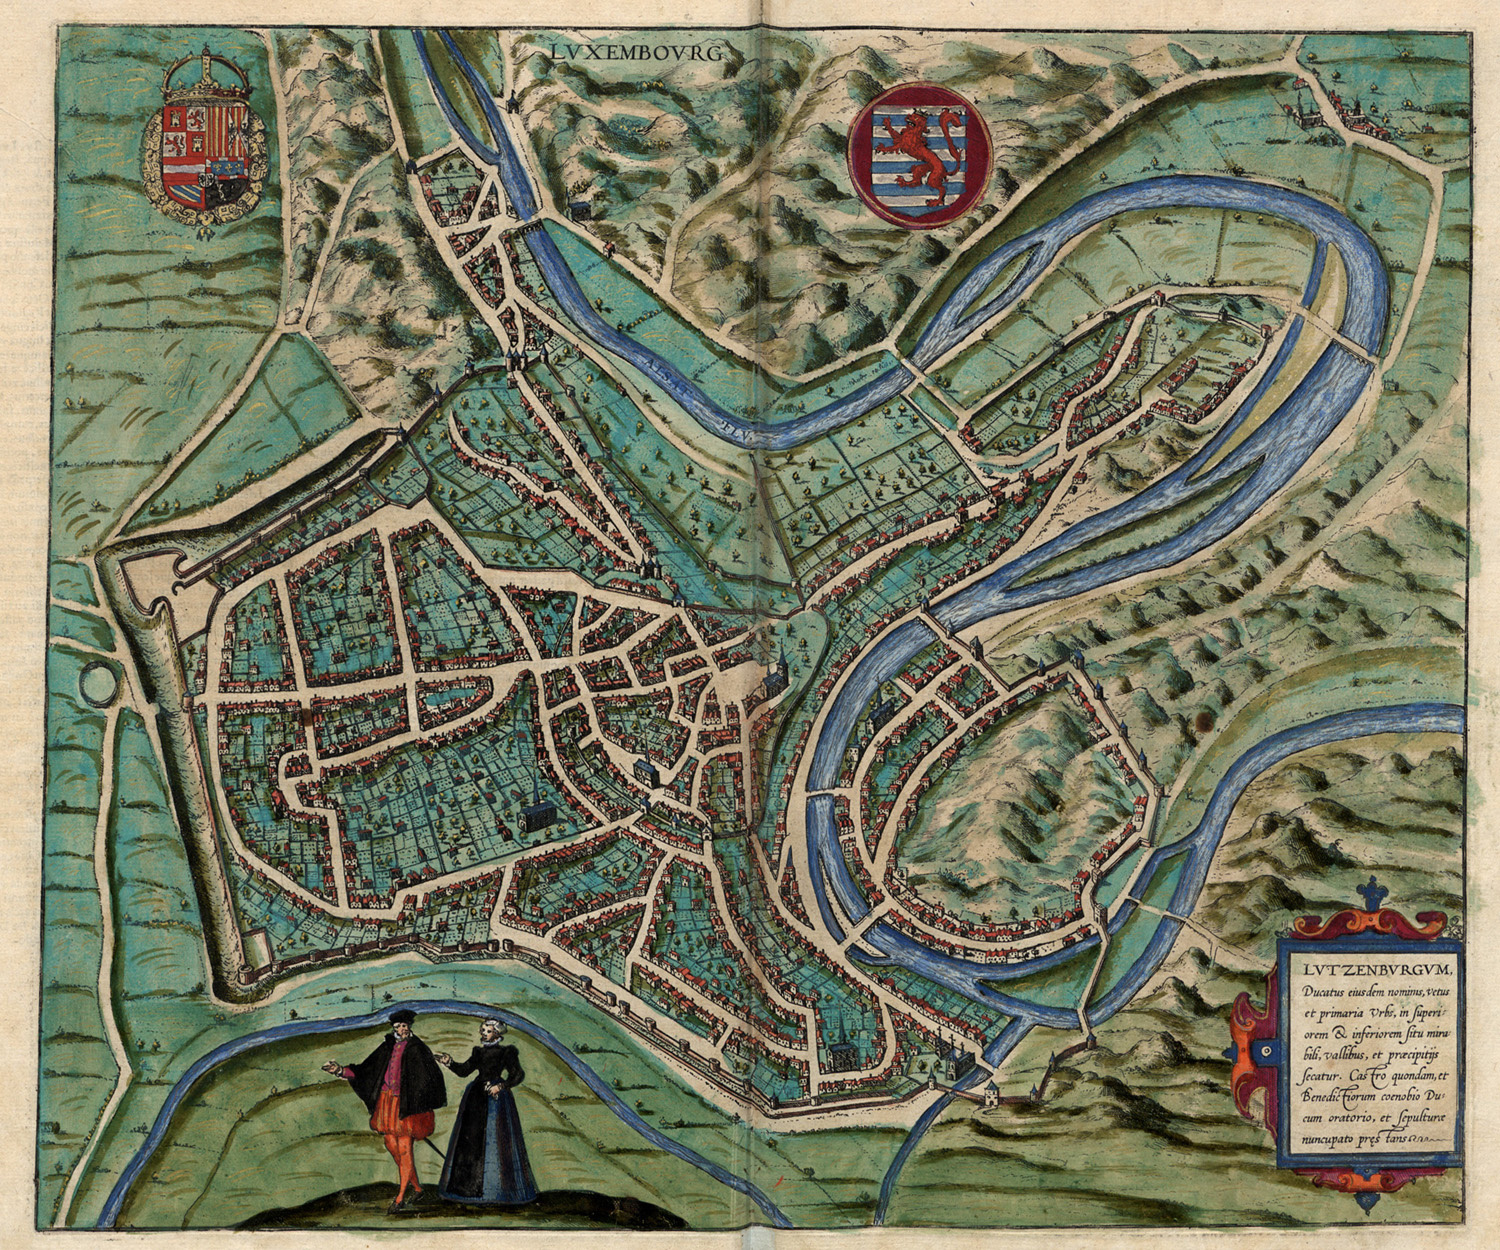 Luxembourg (Lutzenburgum) a XVI–XVII. század fordulóján